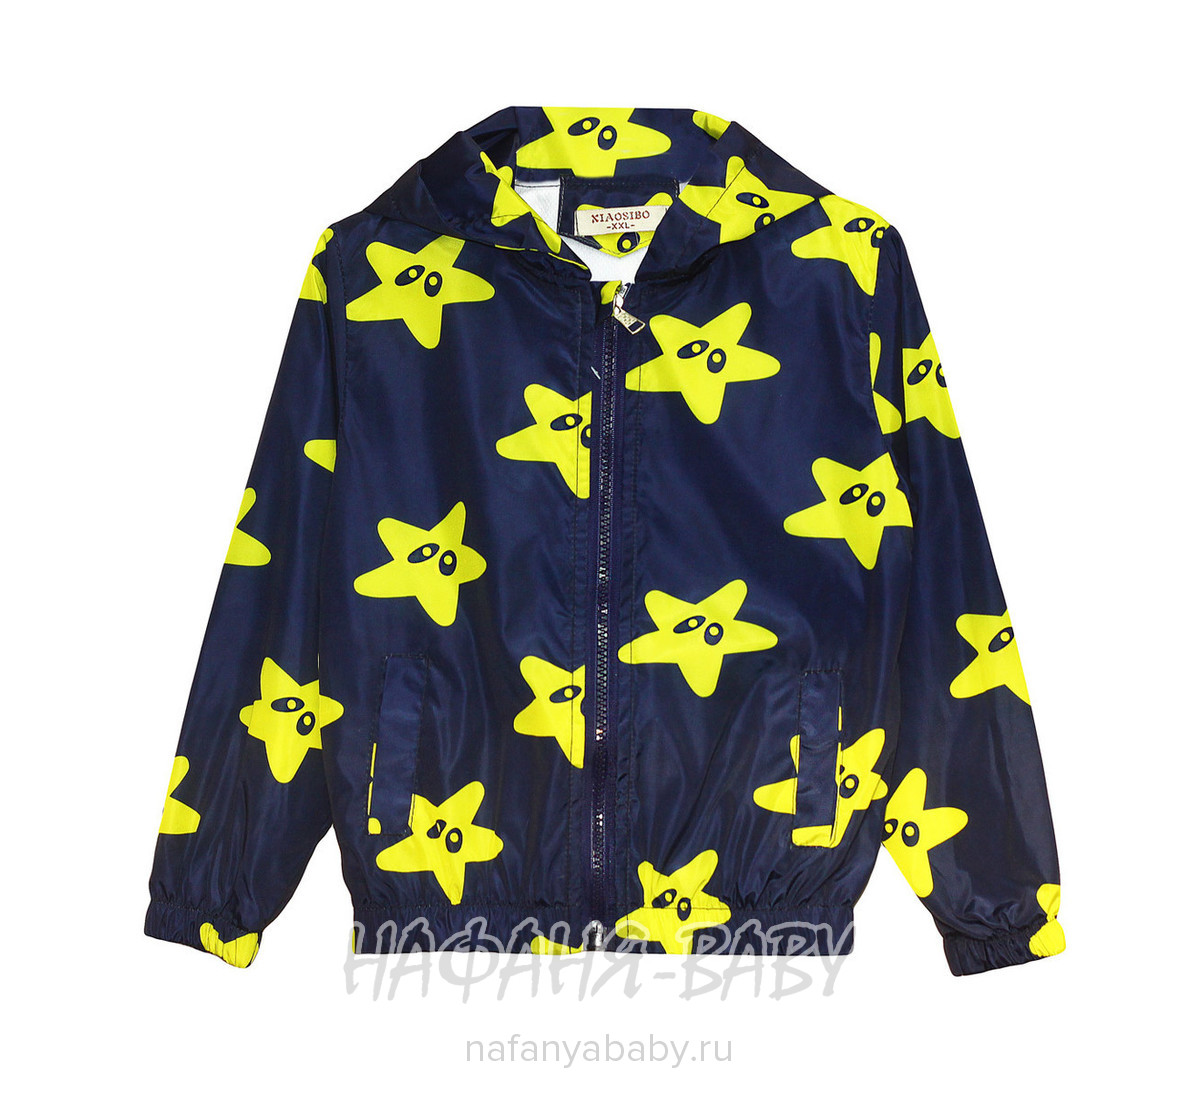 Детская куртка-ветровка XIAO SIBO, купить в интернет магазине Нафаня. арт: 566.